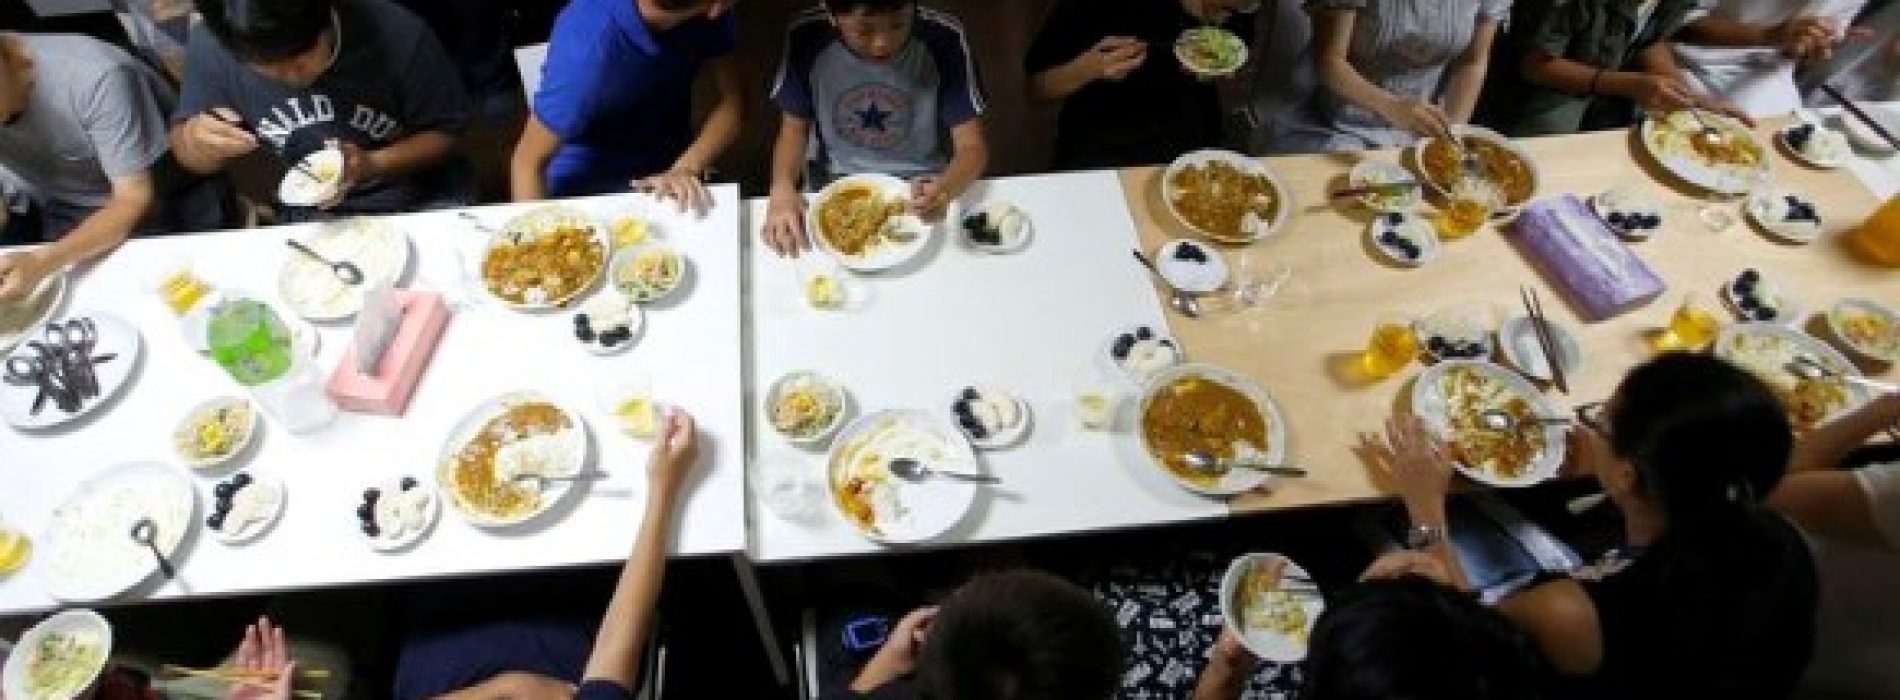 兒童食堂三年激增14倍 貧窮問題惹關注